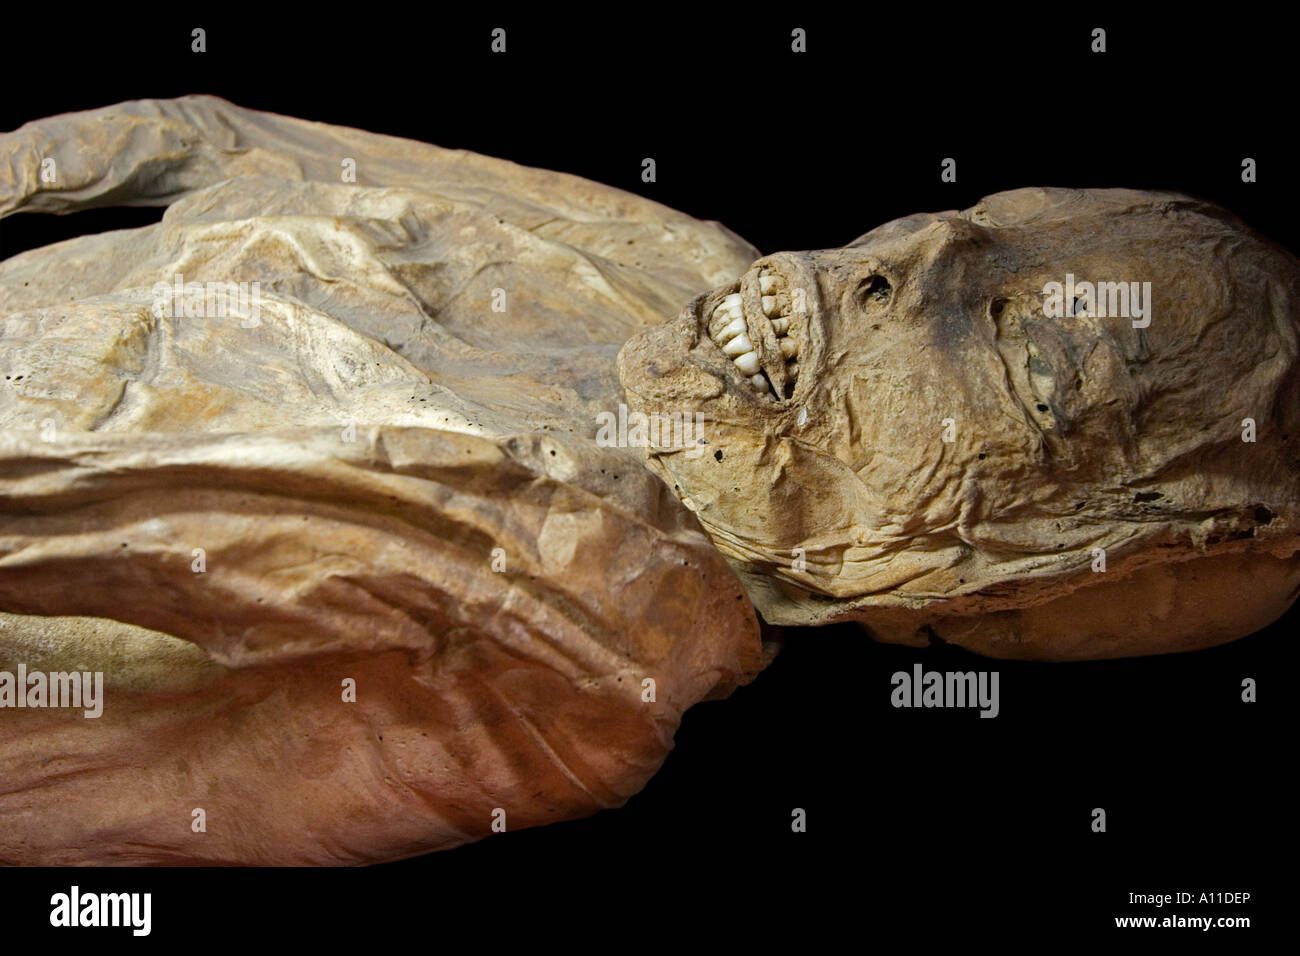 Un cadavere mummificato nel Museo delle Mummie (Guanajuato - Messico). Momie du 'Museo de las Momias' (Guanajuato - Mexique). Foto Stock